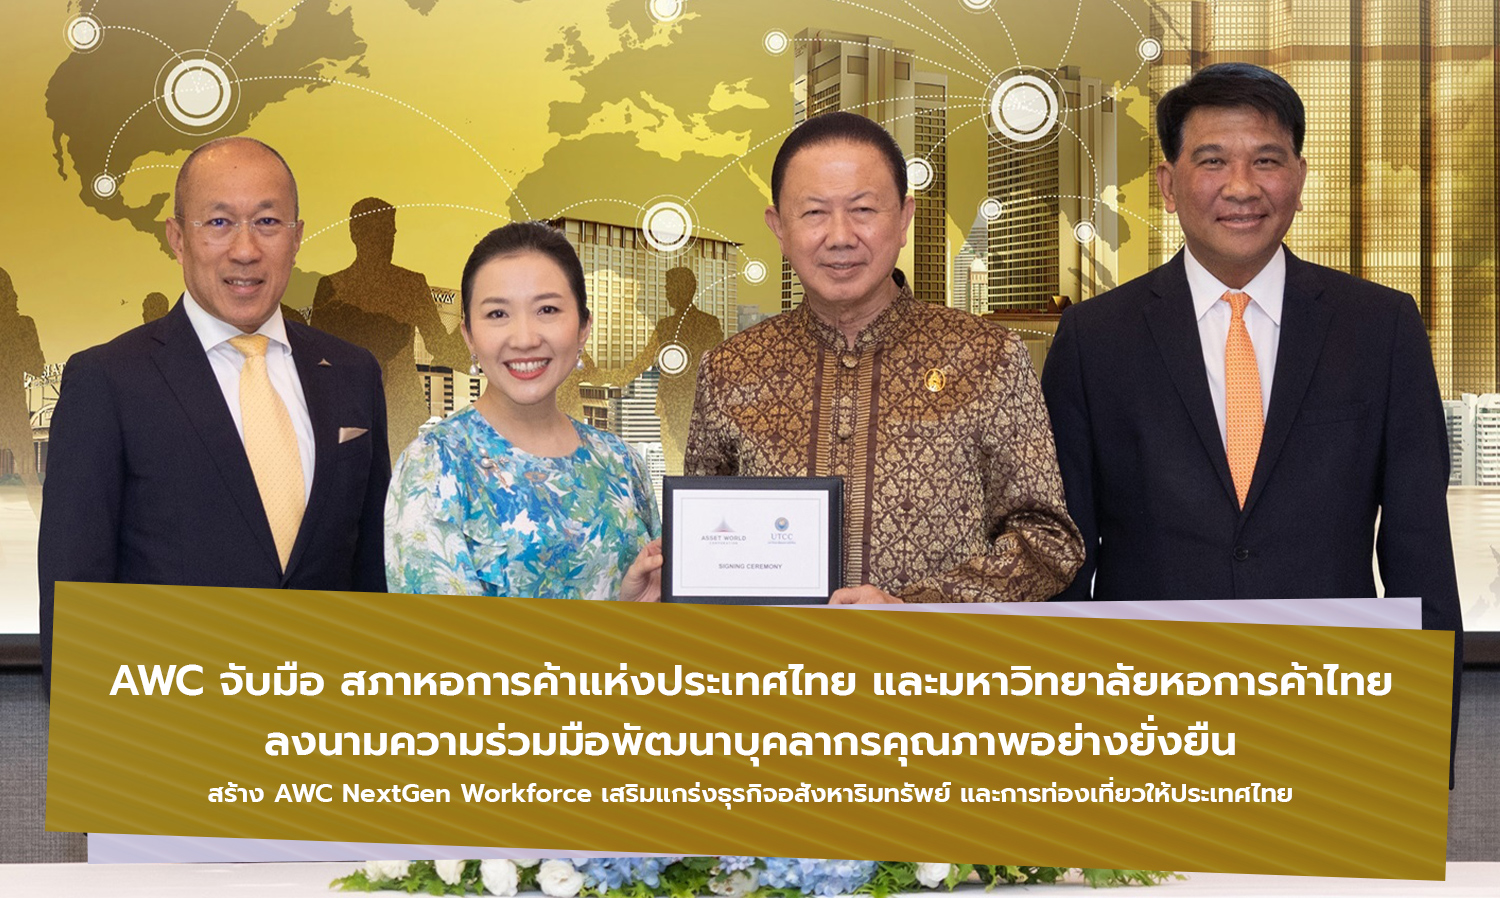 AWC จับมือ สภาหอการค้าแห่งประเทศไทย และมหาวิทยาลัยหอการค้าไทย  ลงนามความร่วมมือพัฒนาบุคลากรคุณภาพอย่างยั่งยืน 